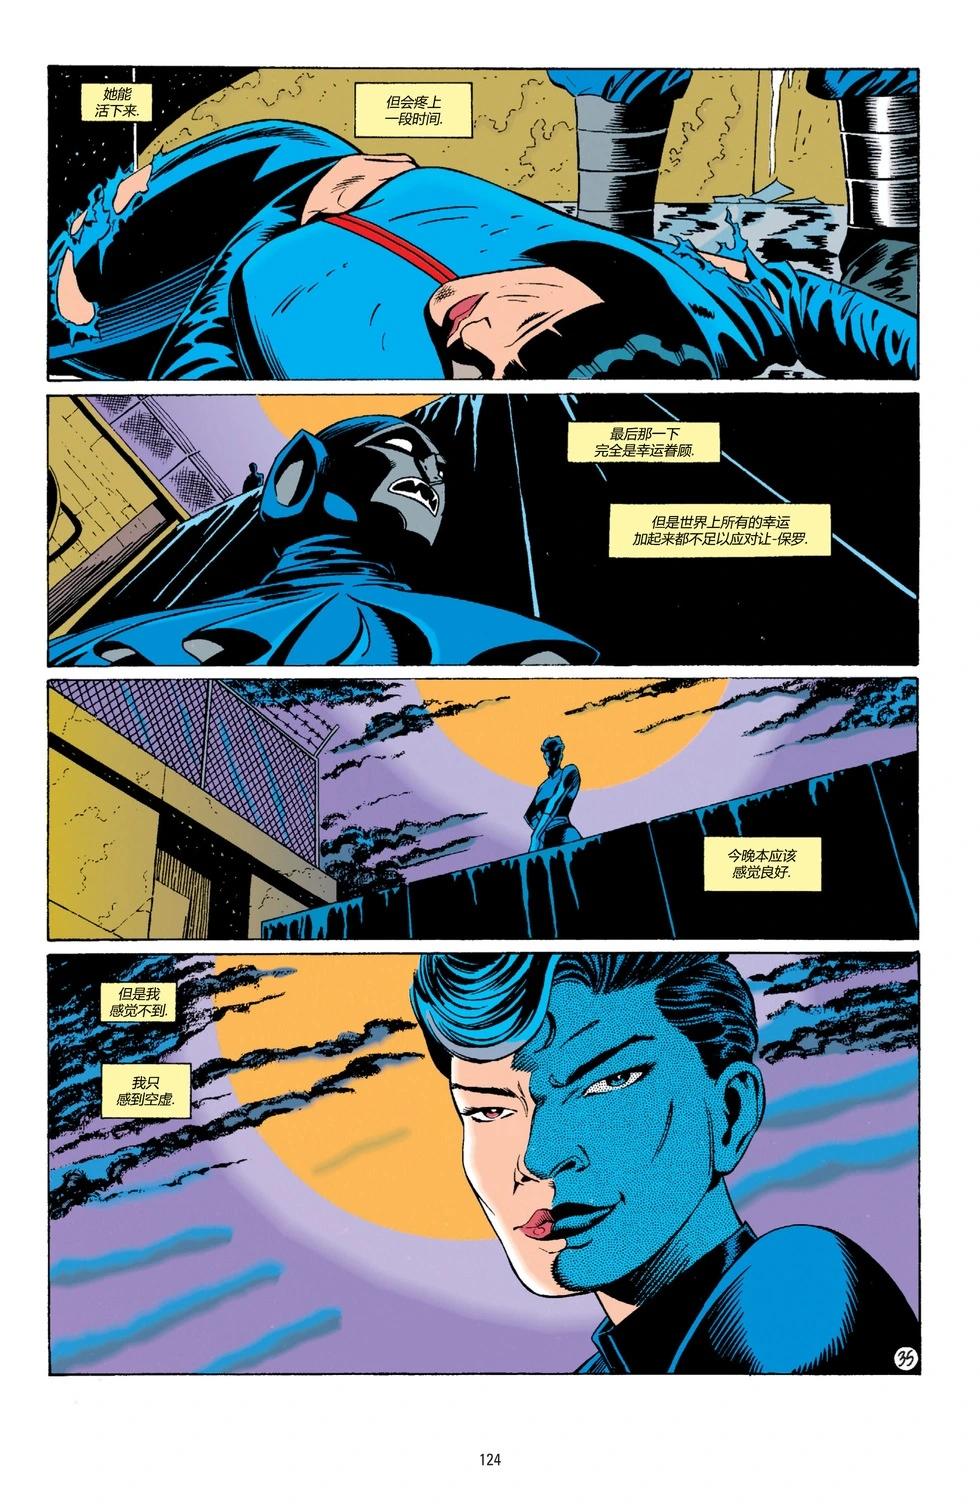 蝙蝠俠：騎士隕落 - 062-偵探漫畫#676 - 6